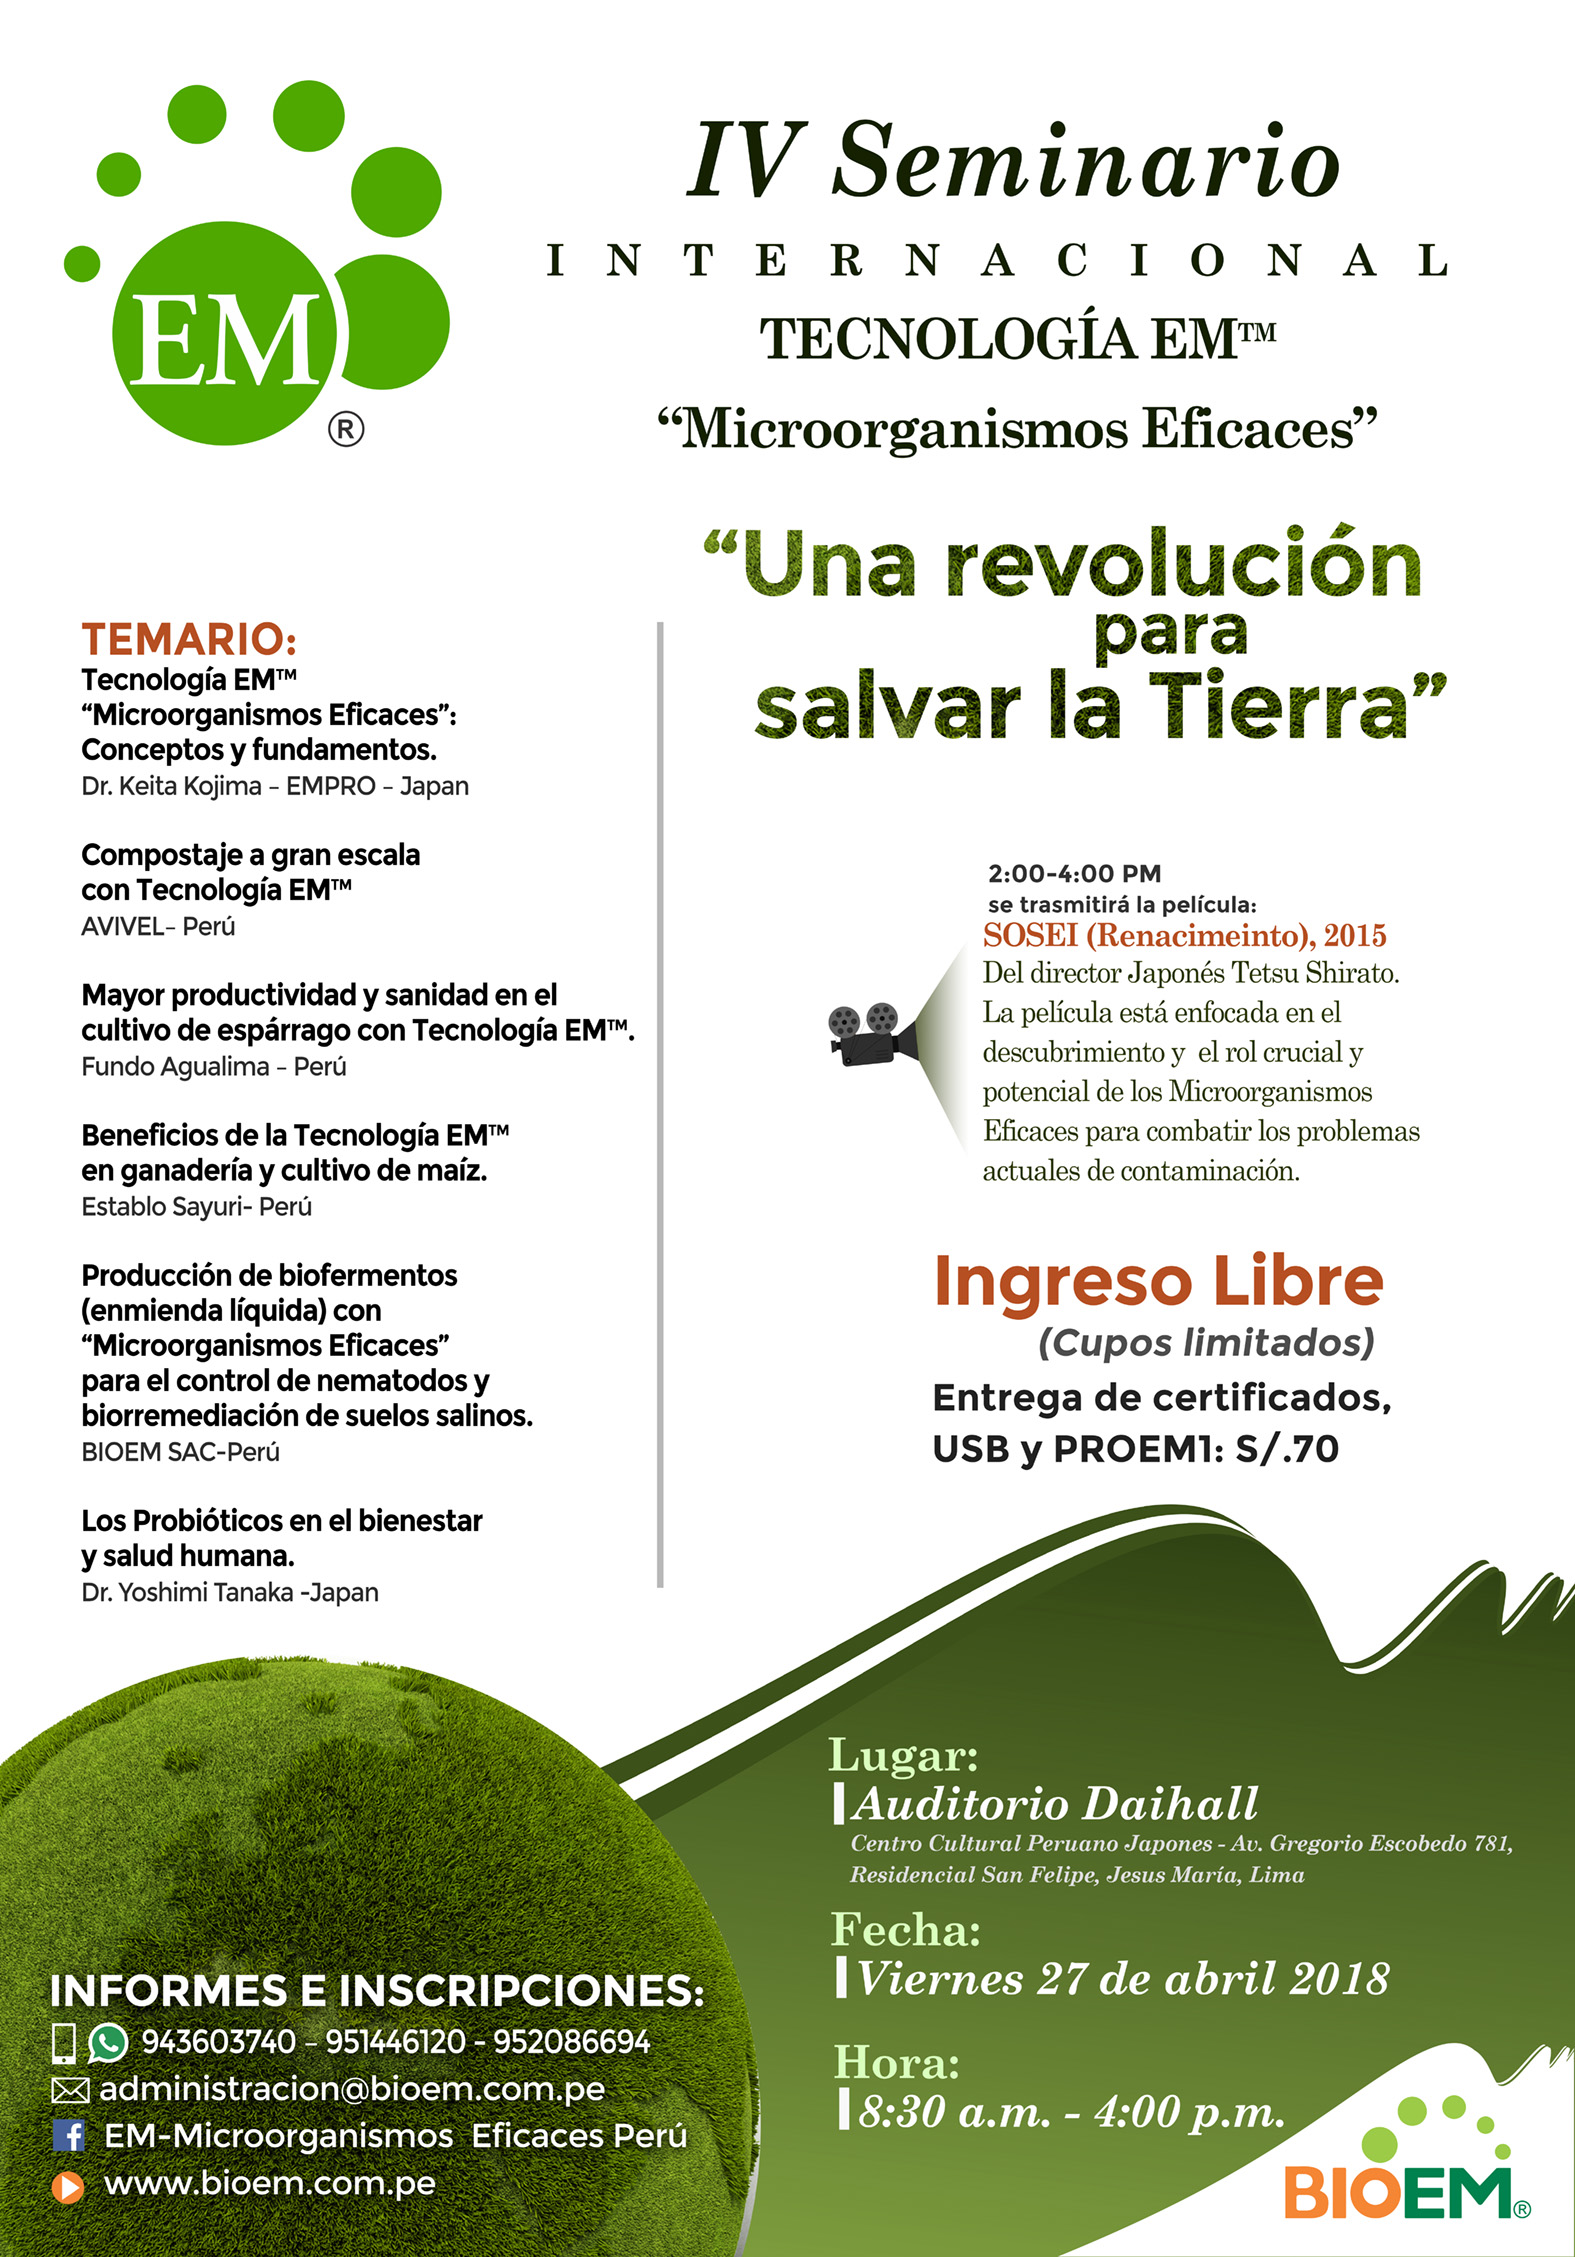 International EM Technology Seminar in Peru in April, 2018 